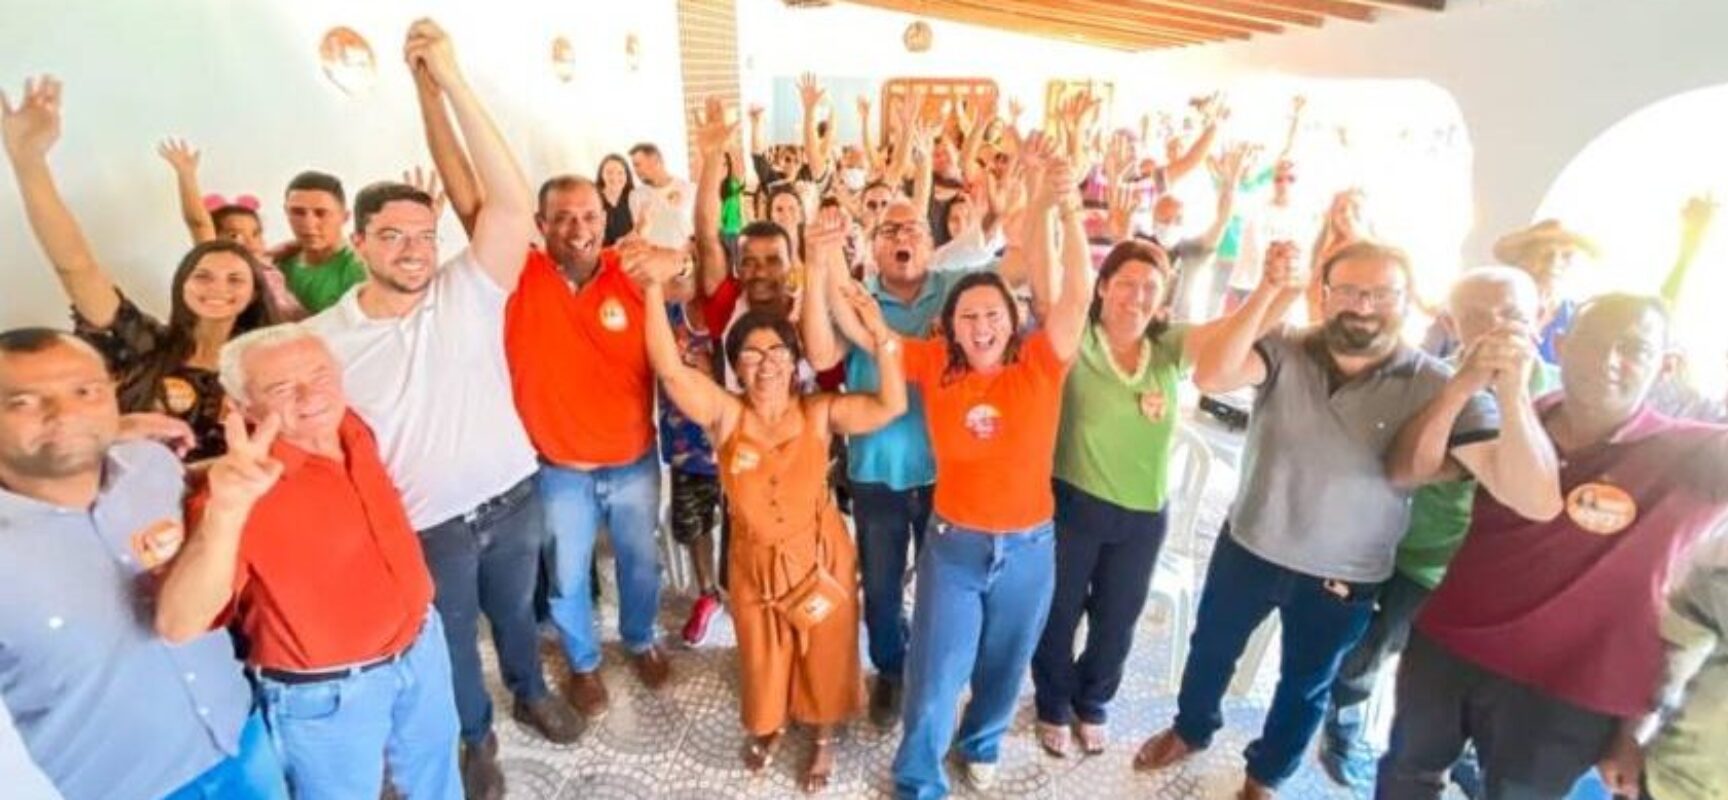 Soane percorre sudoeste e em Condeúba recebe apoios à sua candidatura